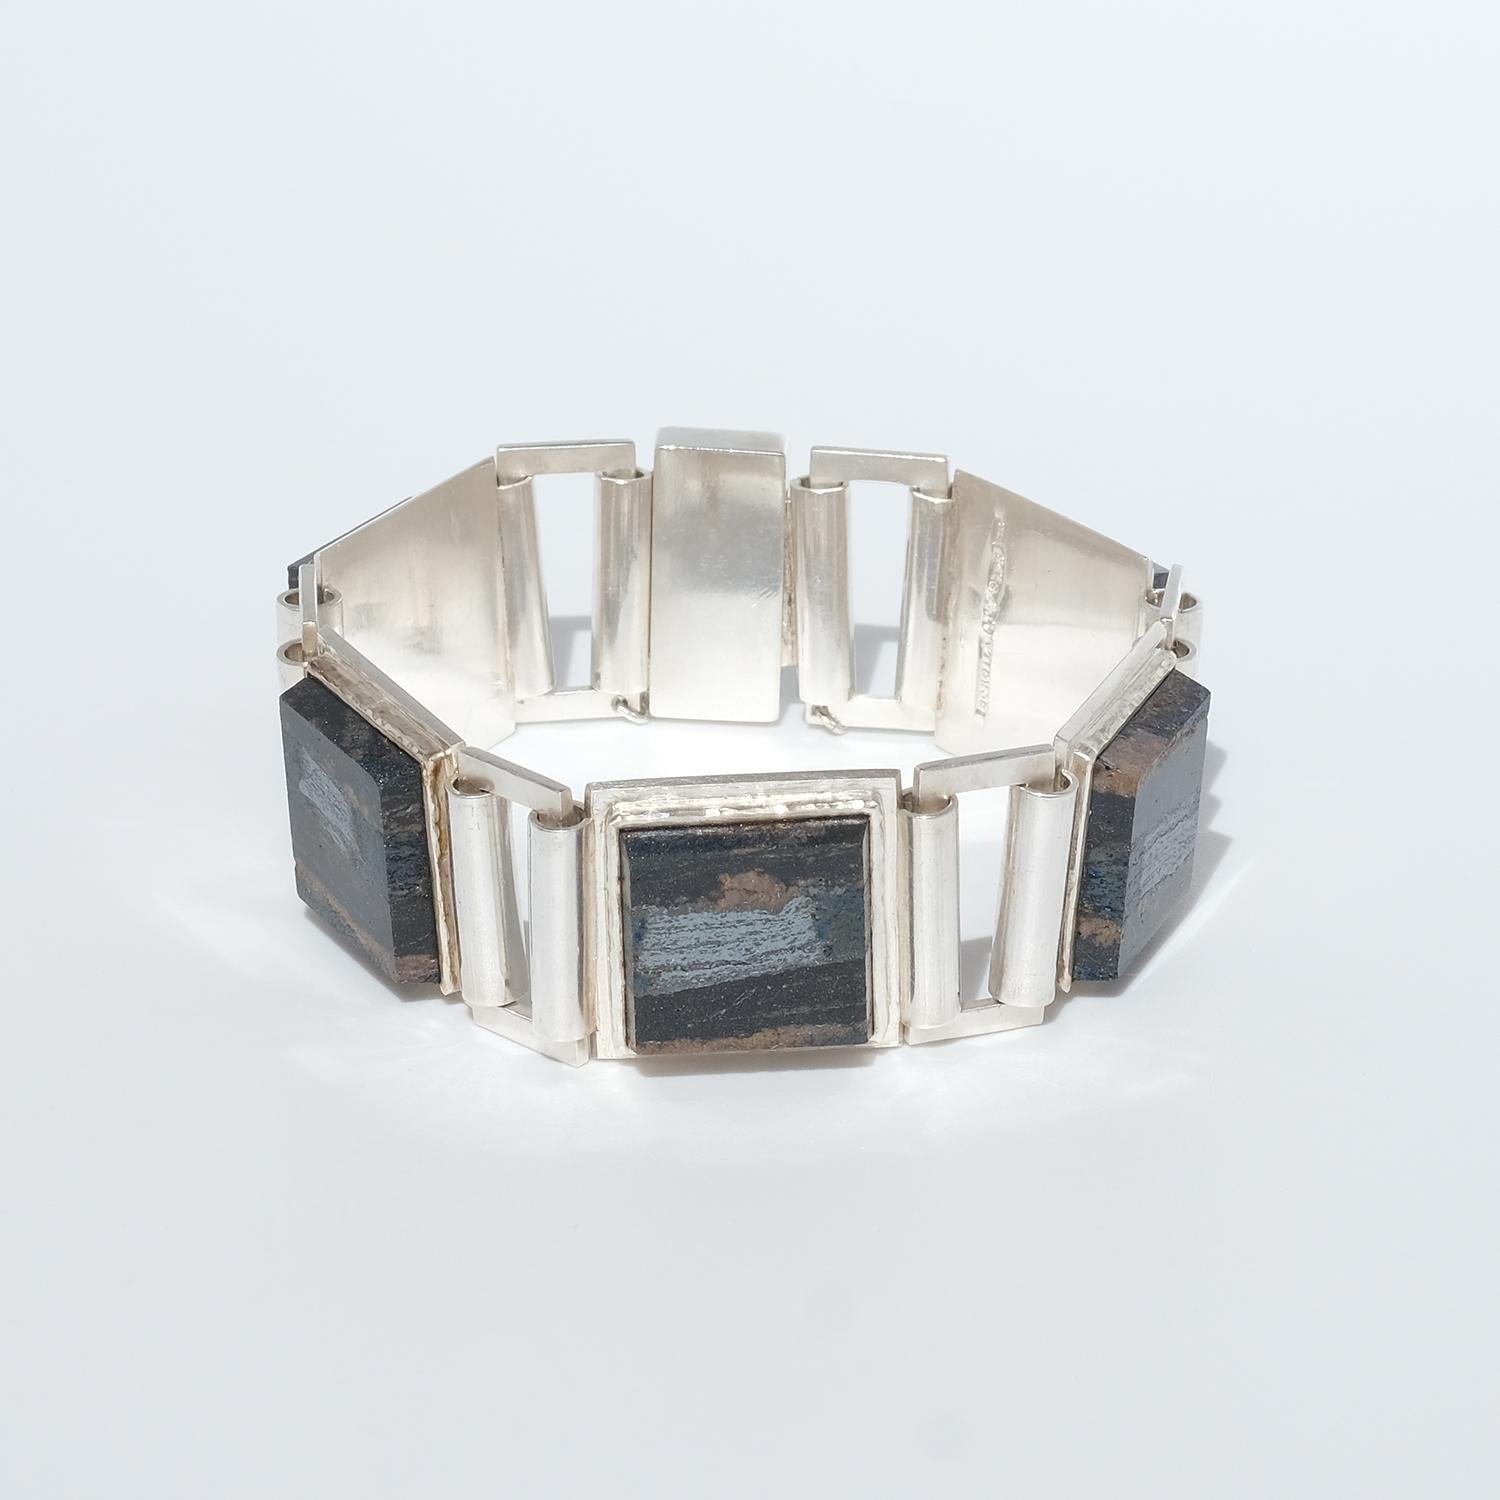 Dieses Armband ist aus Sterlingsilber und fünf quadratischen Schiefersteinen gefertigt. Die Schiefersteine sind durch silberne Rechtecke miteinander verbunden. Das Armband lässt sich leicht mit einem Kastenverschluss mit Sicherheitskette schließen.